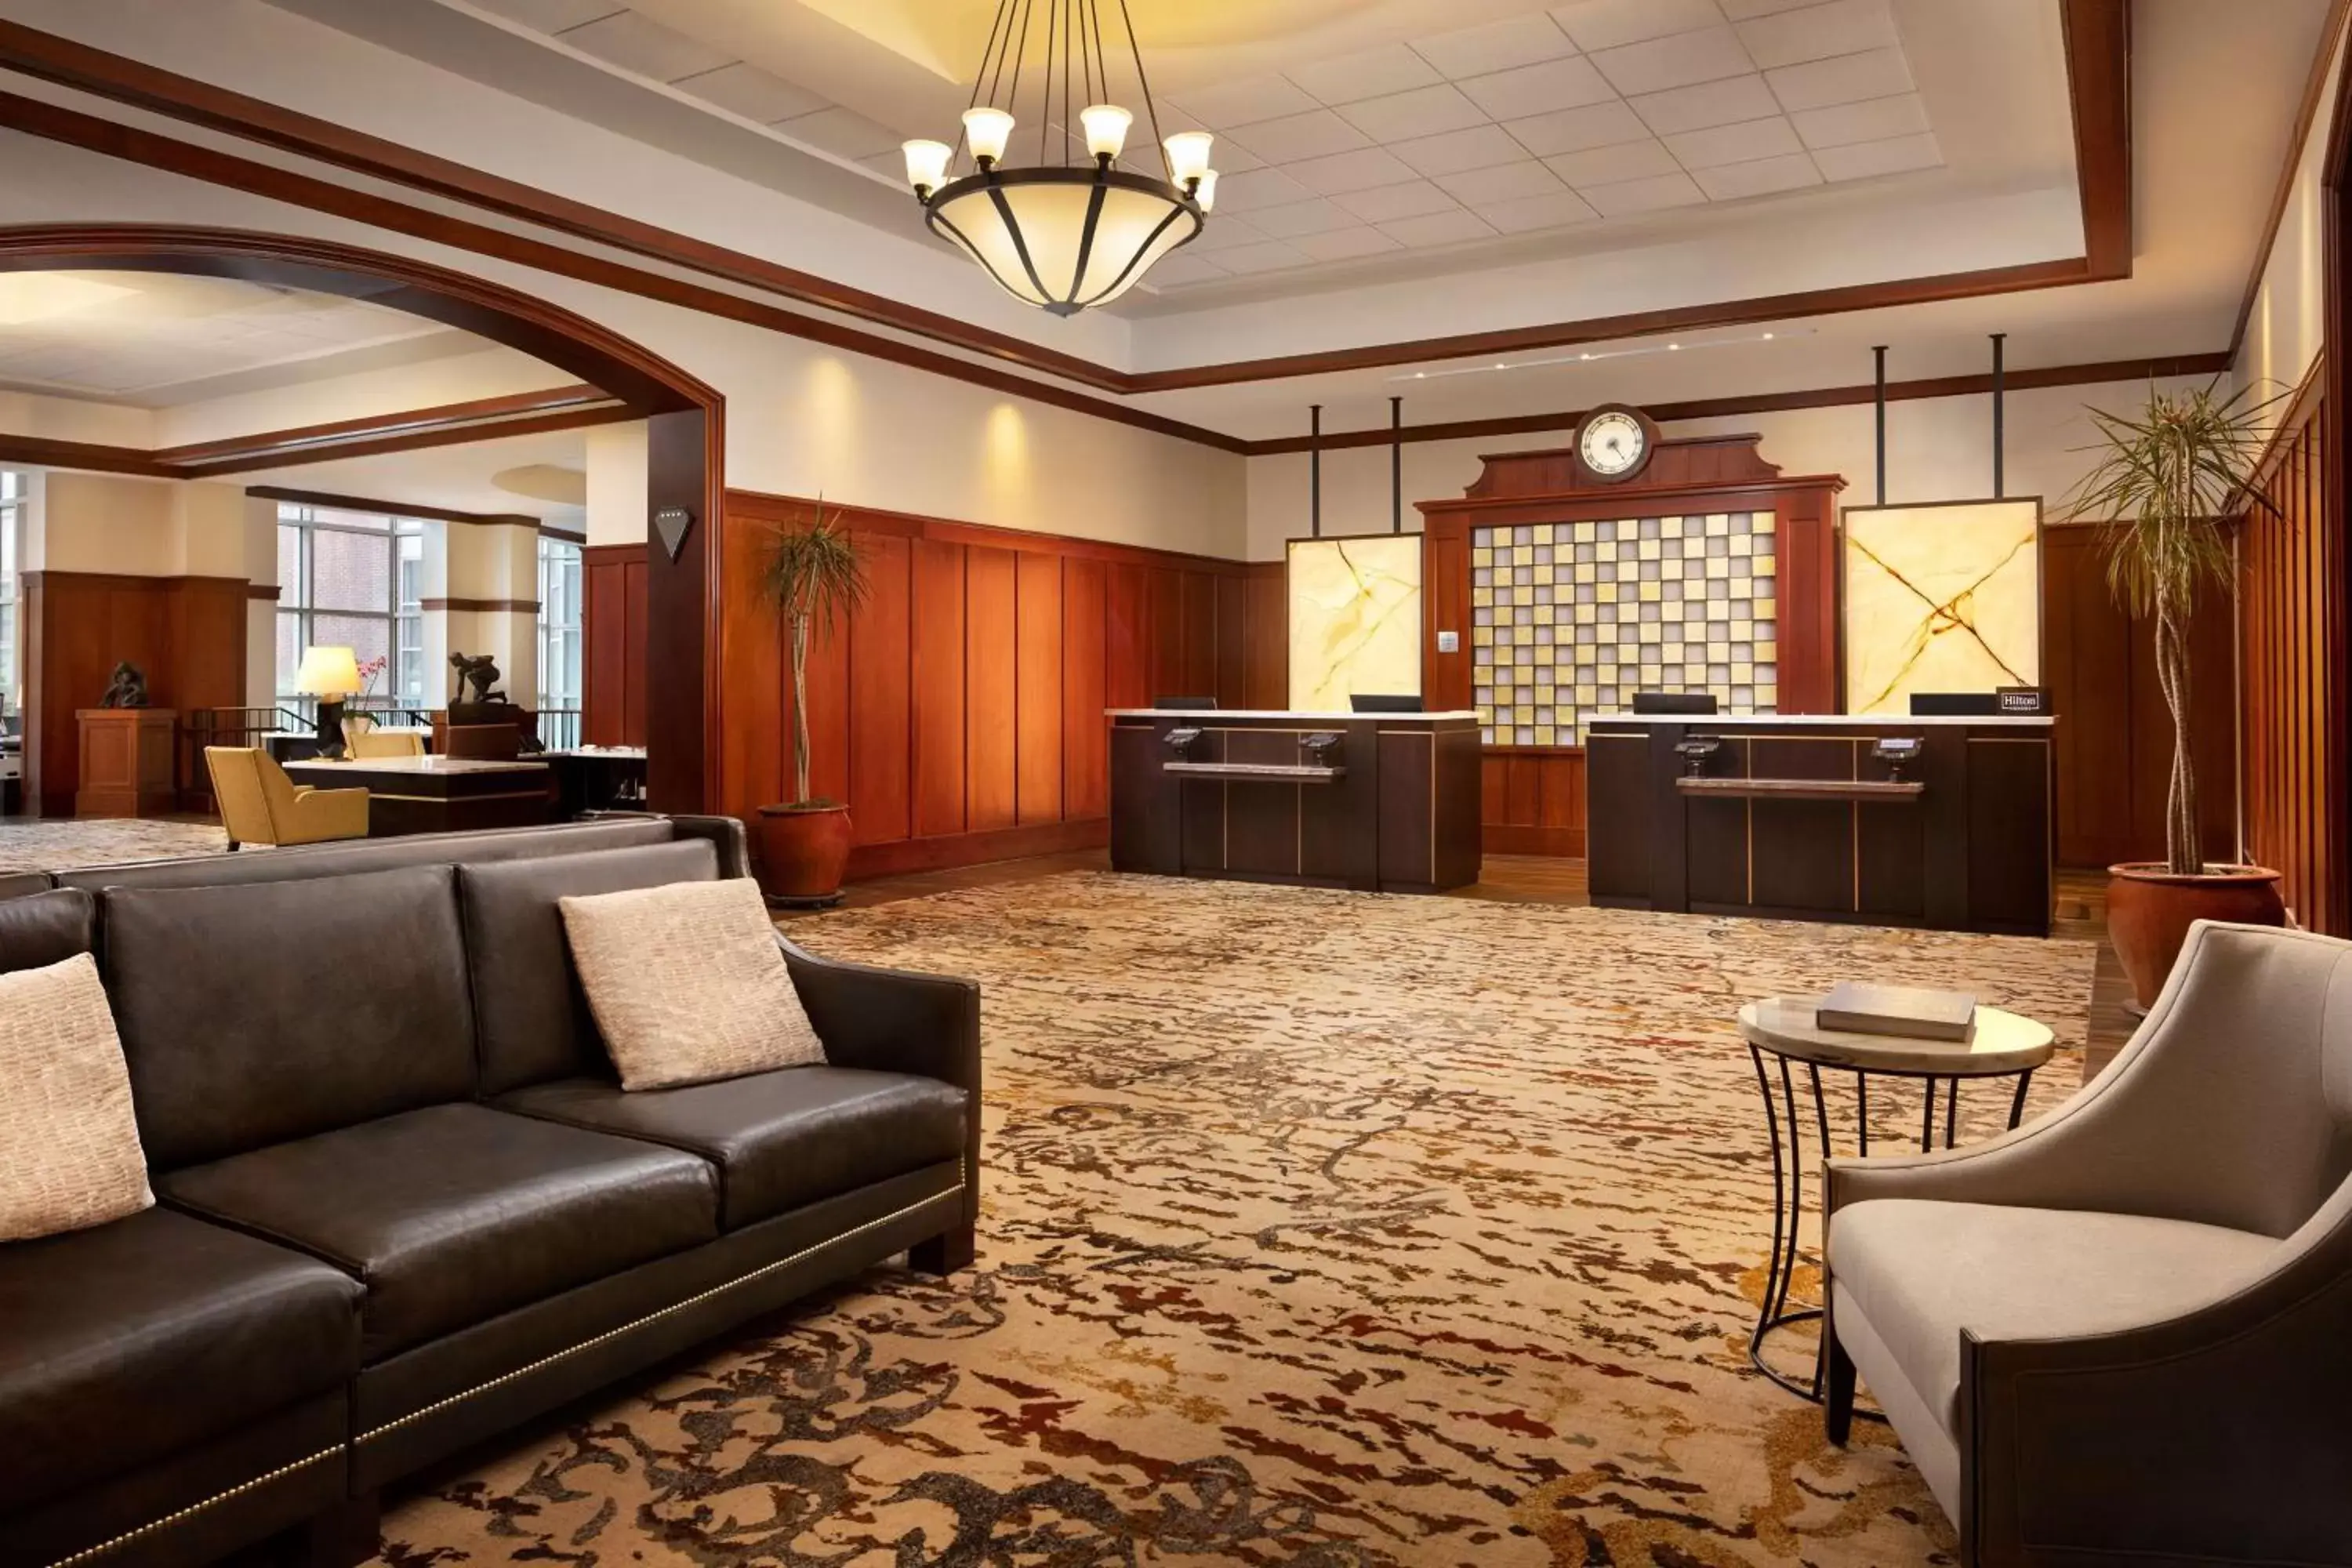 Lobby or reception in The Inn at Penn, A Hilton Hotel